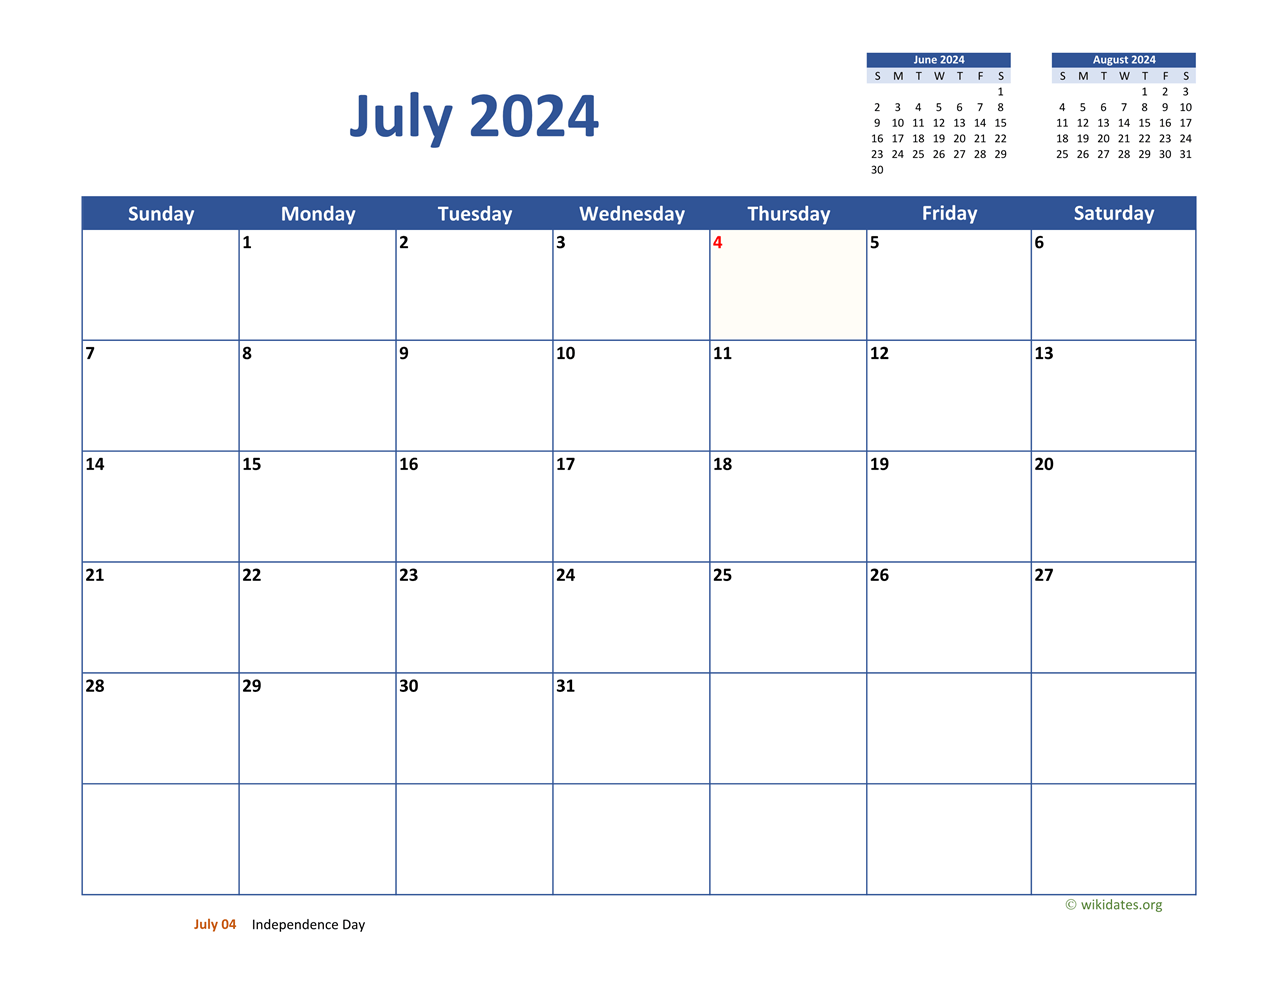 July 2024 Calendar Classic | WikiDates.org